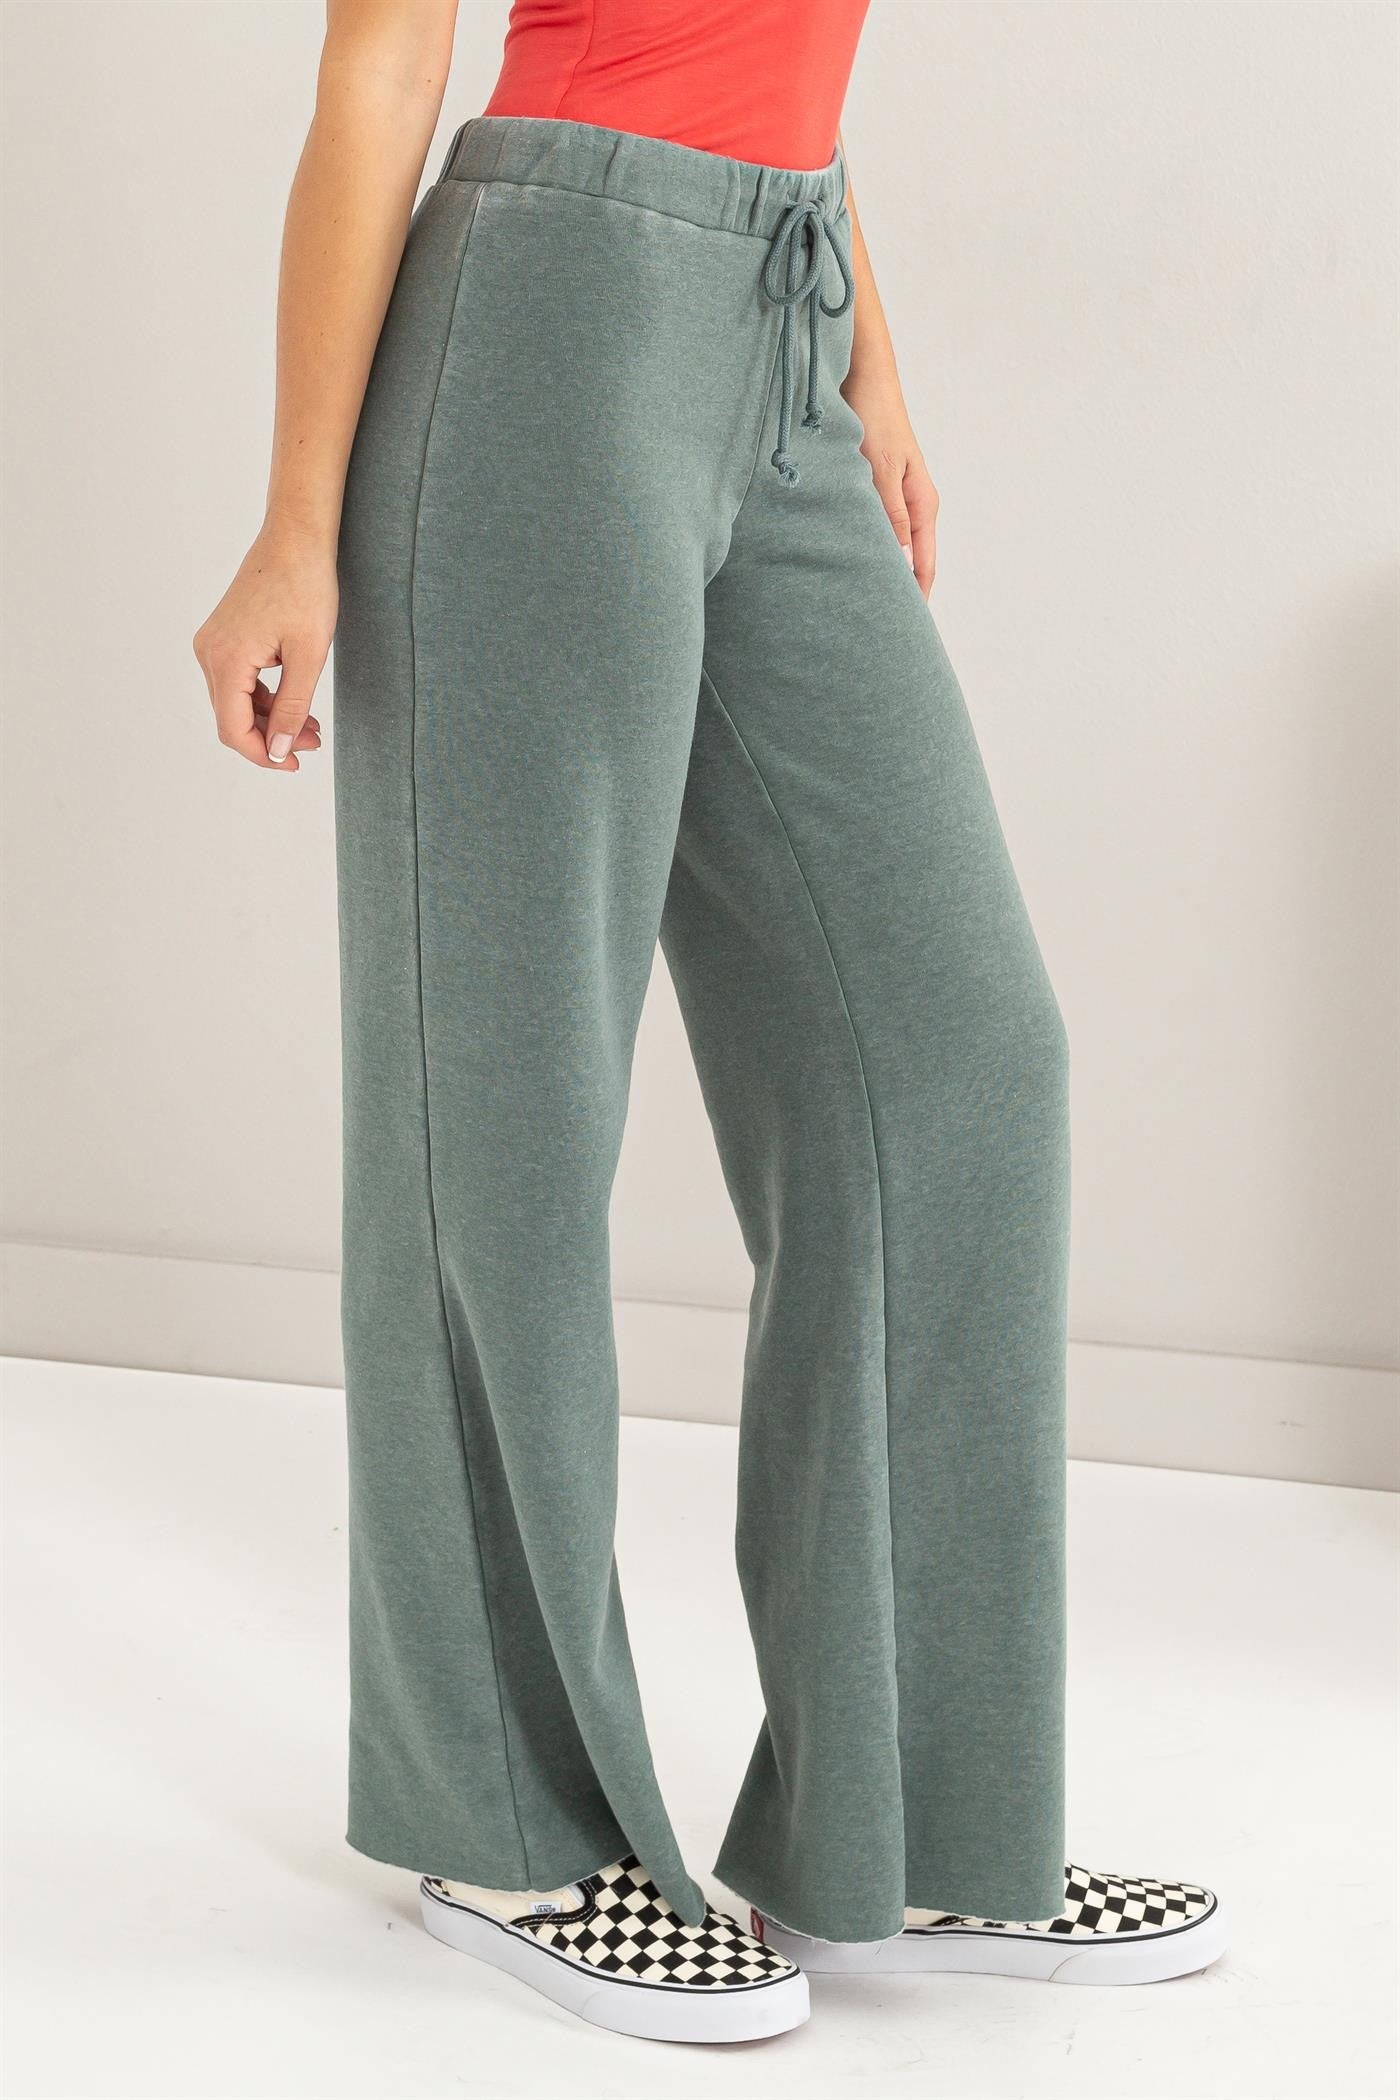 Pants - Flared Drawstring - Grey Green-hotRAGS.com